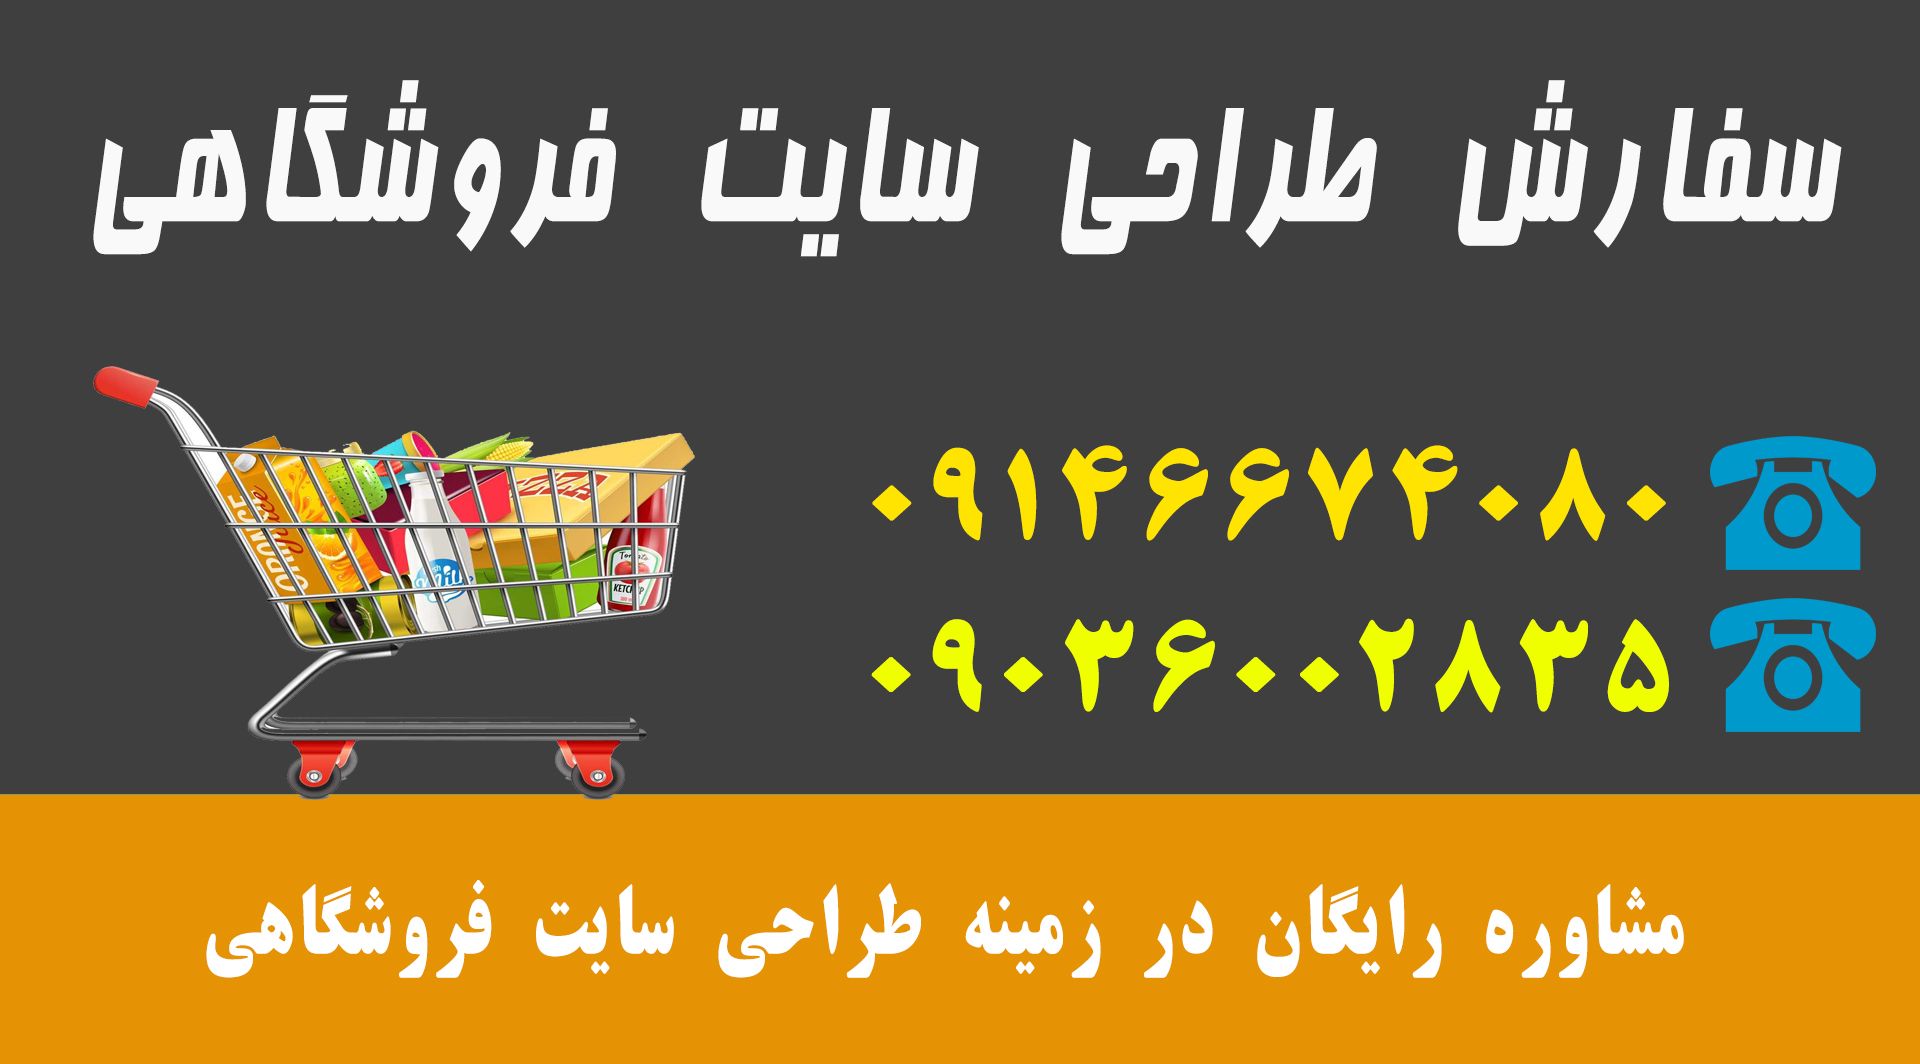 طراحی سایت فروشگاهی در تبریز